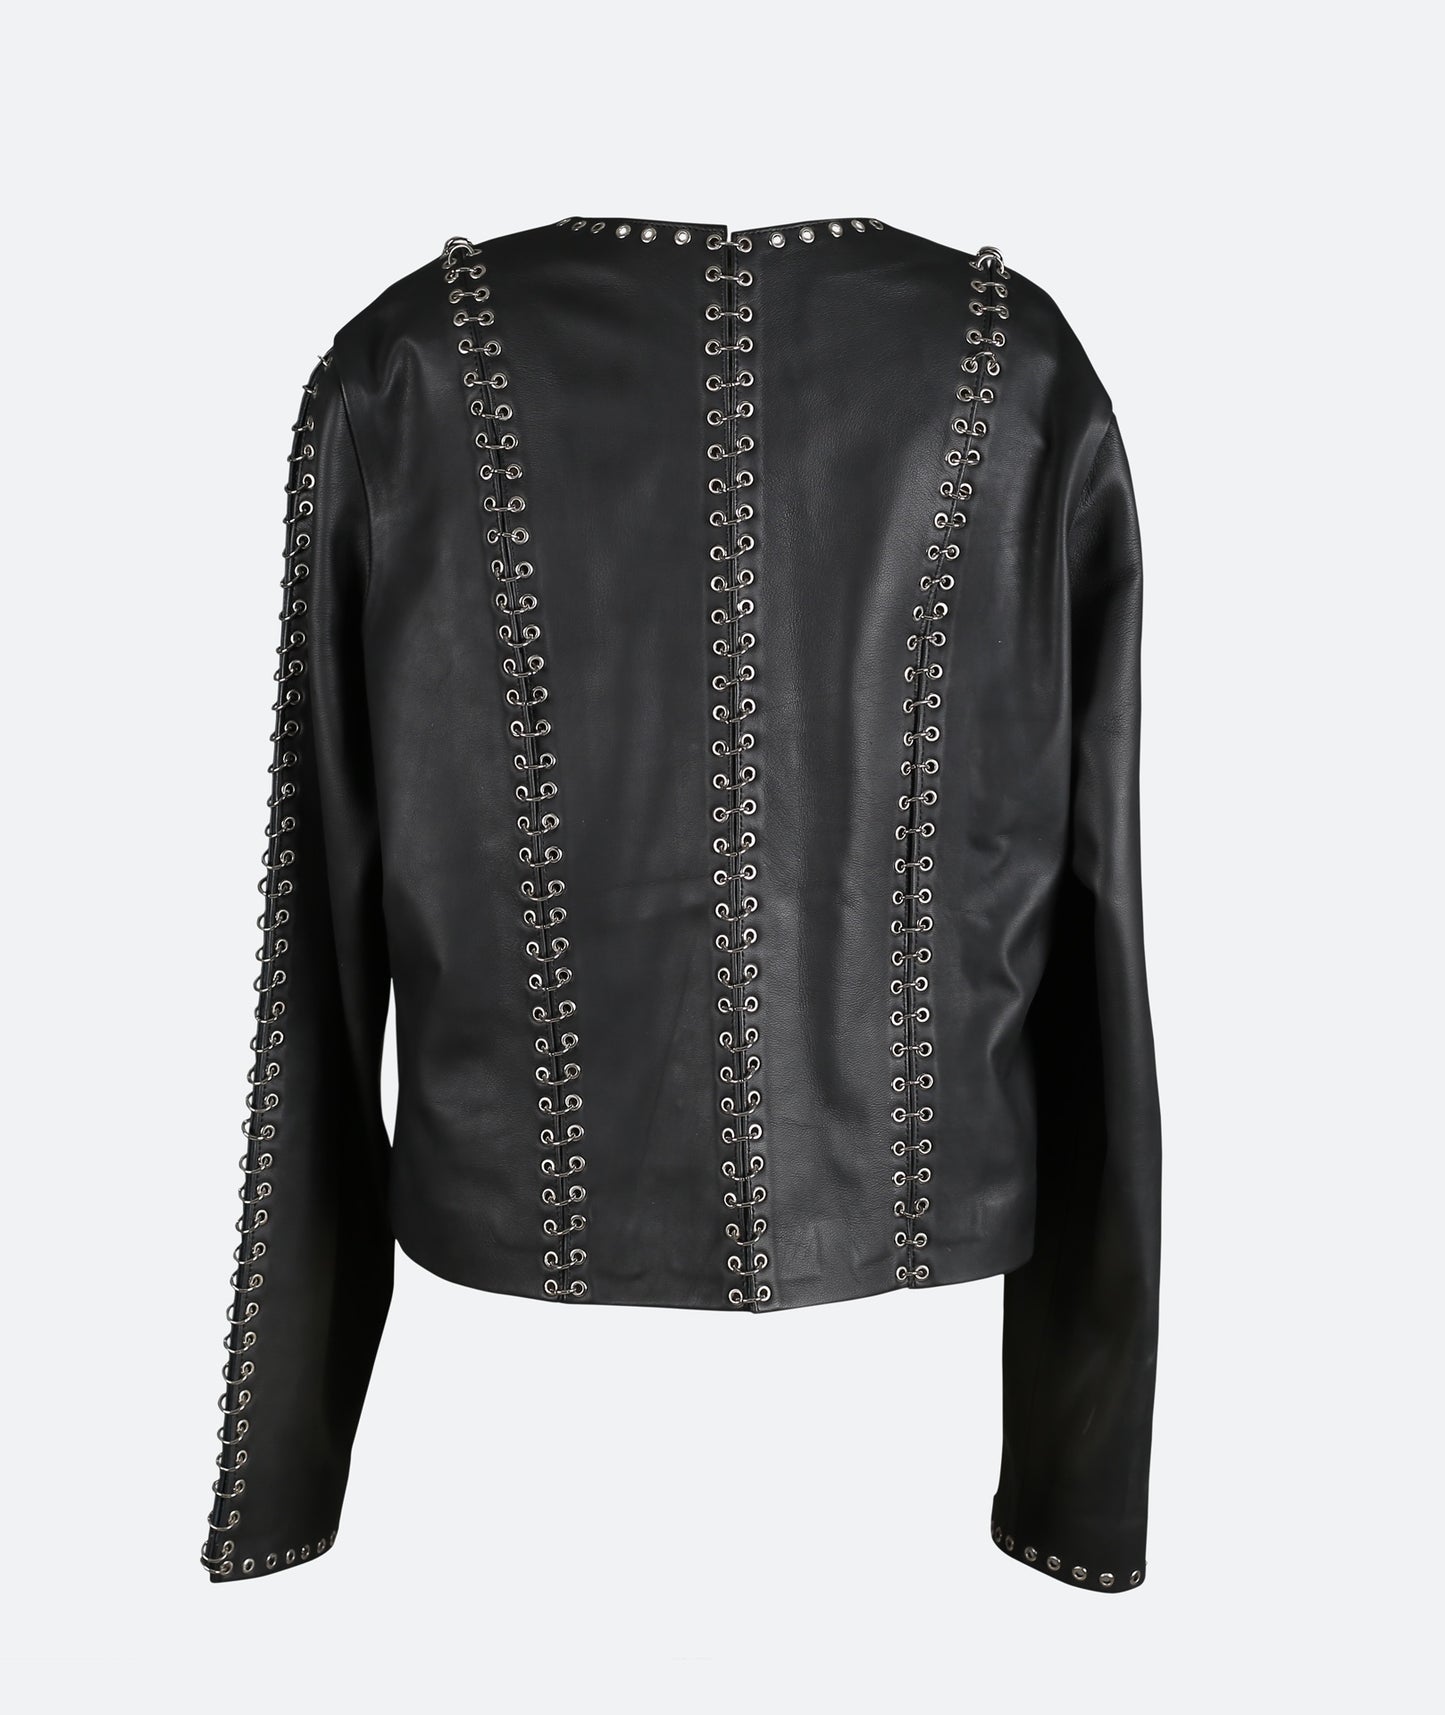 Chrome Leather Jacket Black